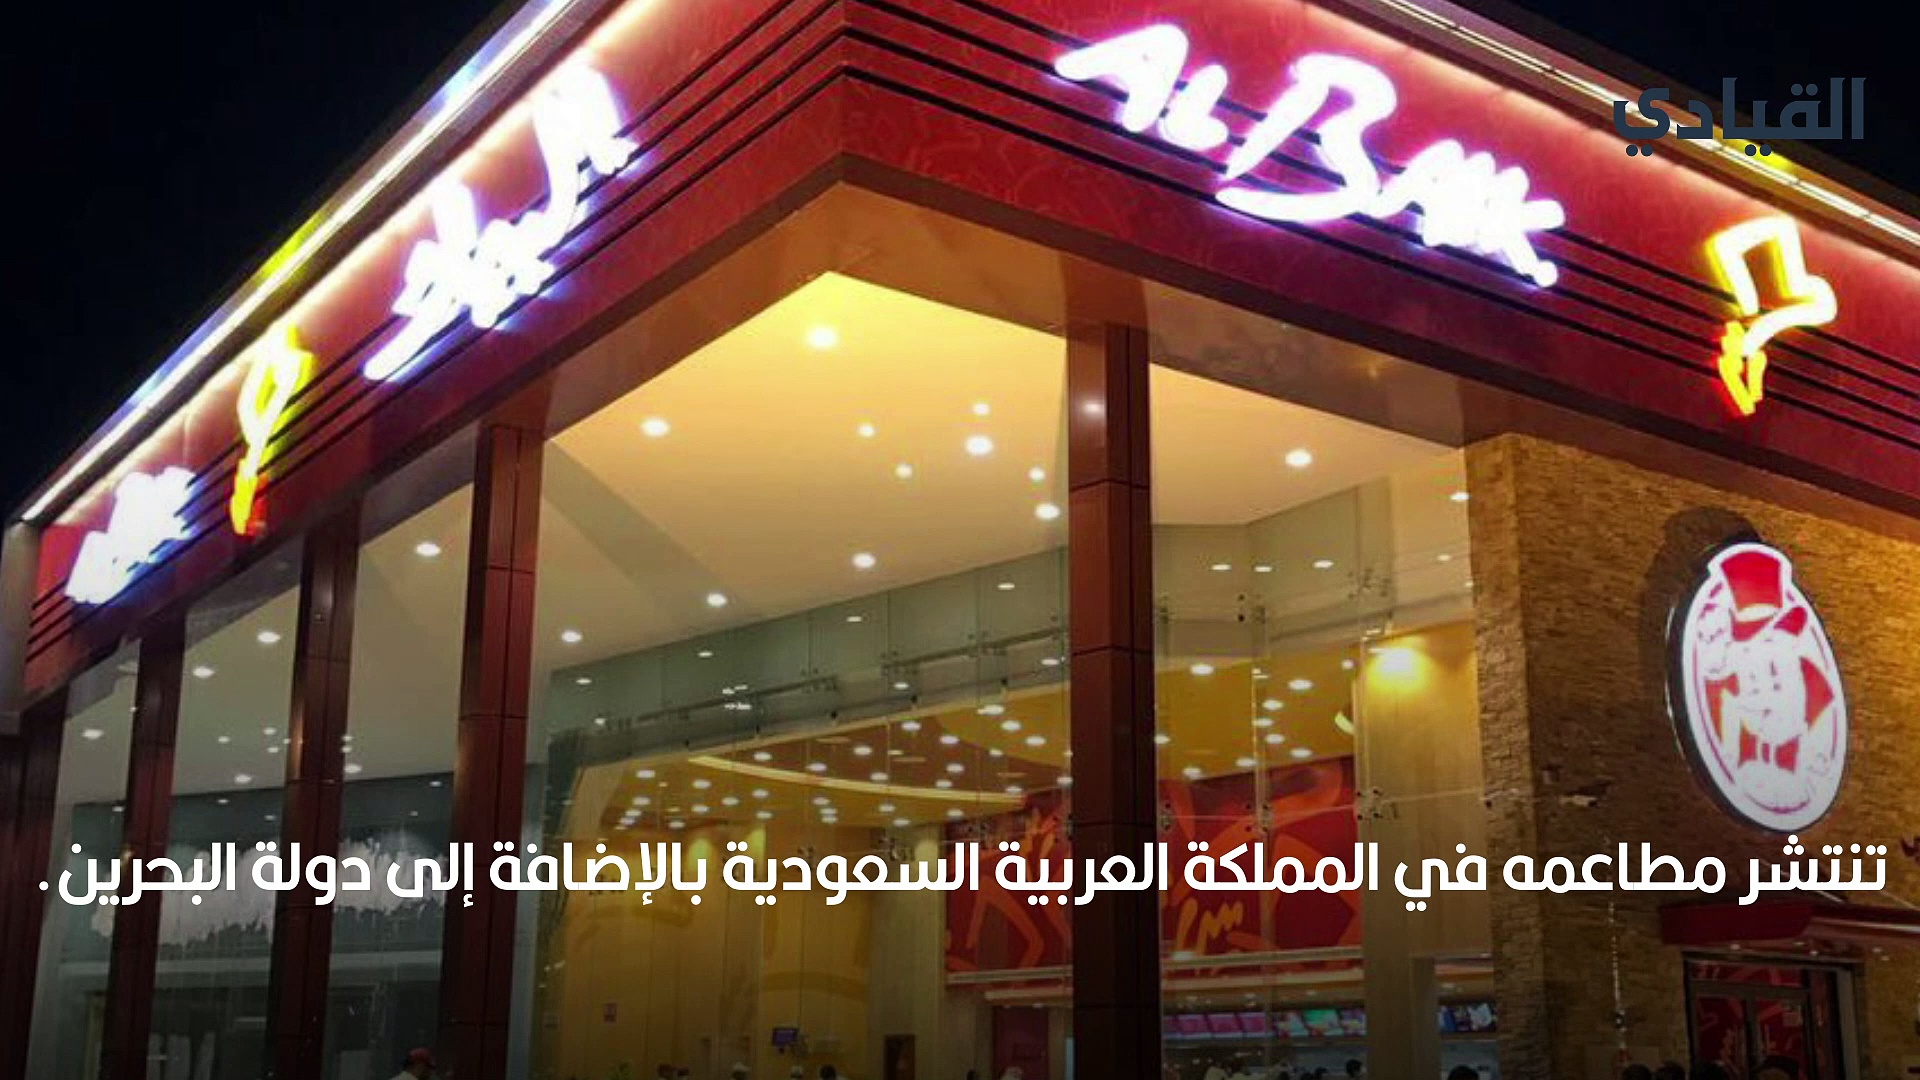 رامي أبو غزالة: جعل من مطعم والده الصغير أشهر سلسلة مطاعم في السعودية -  القيادي